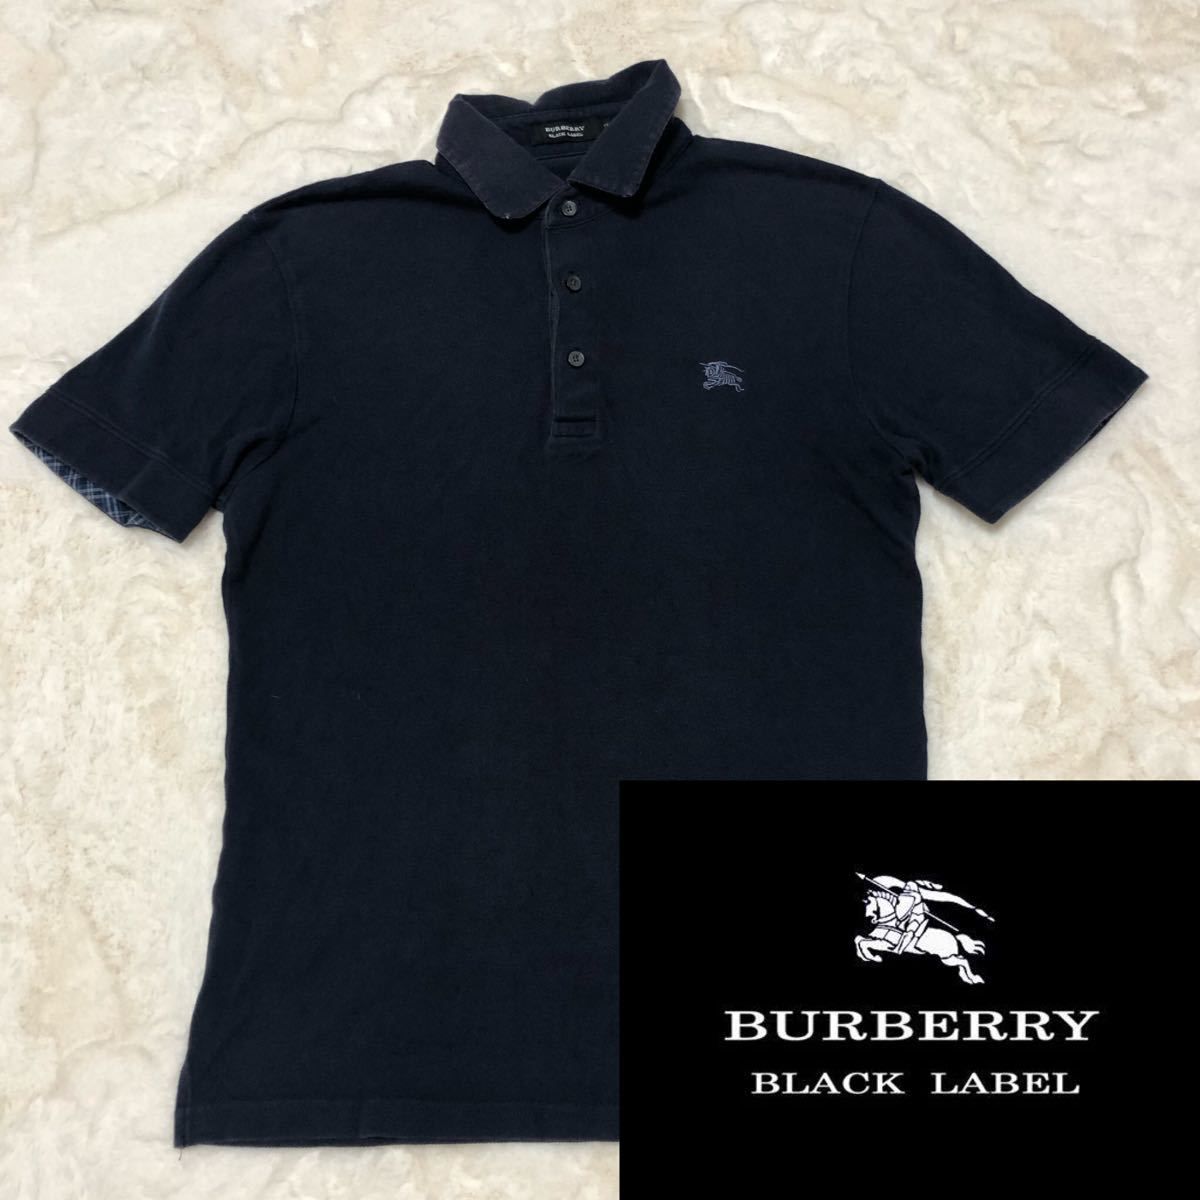 BURBERRY BLACK LABEL バーバリーブラックレーベル ポロシャツ 美品 